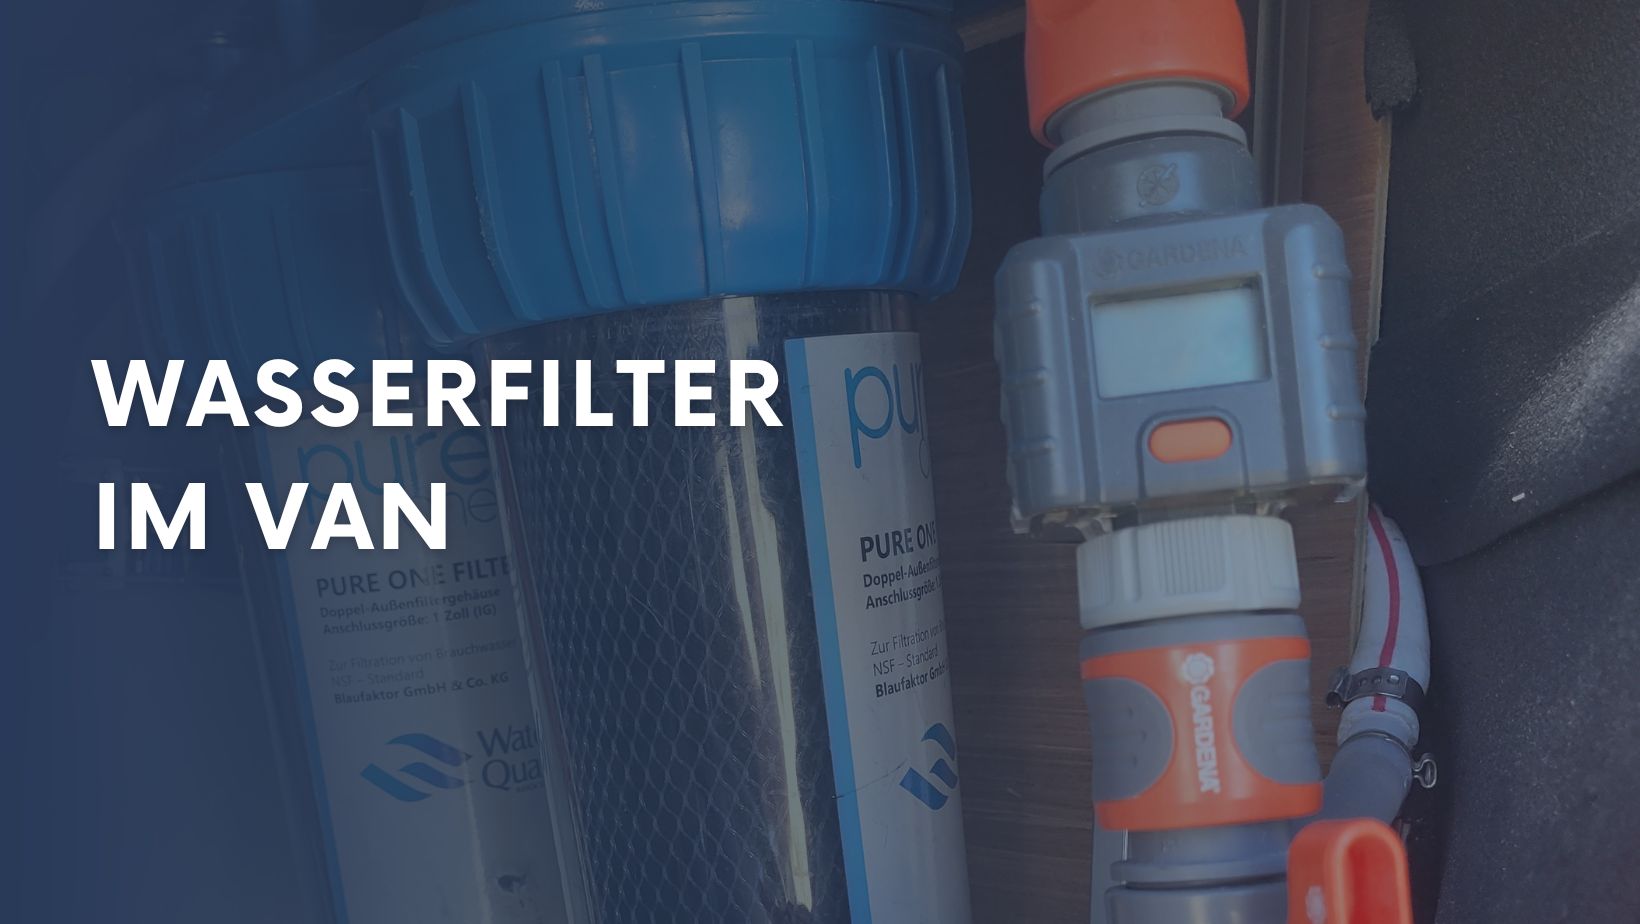 Wasserfilter im Van. Alternative zu Alb Filter? - How to Van!